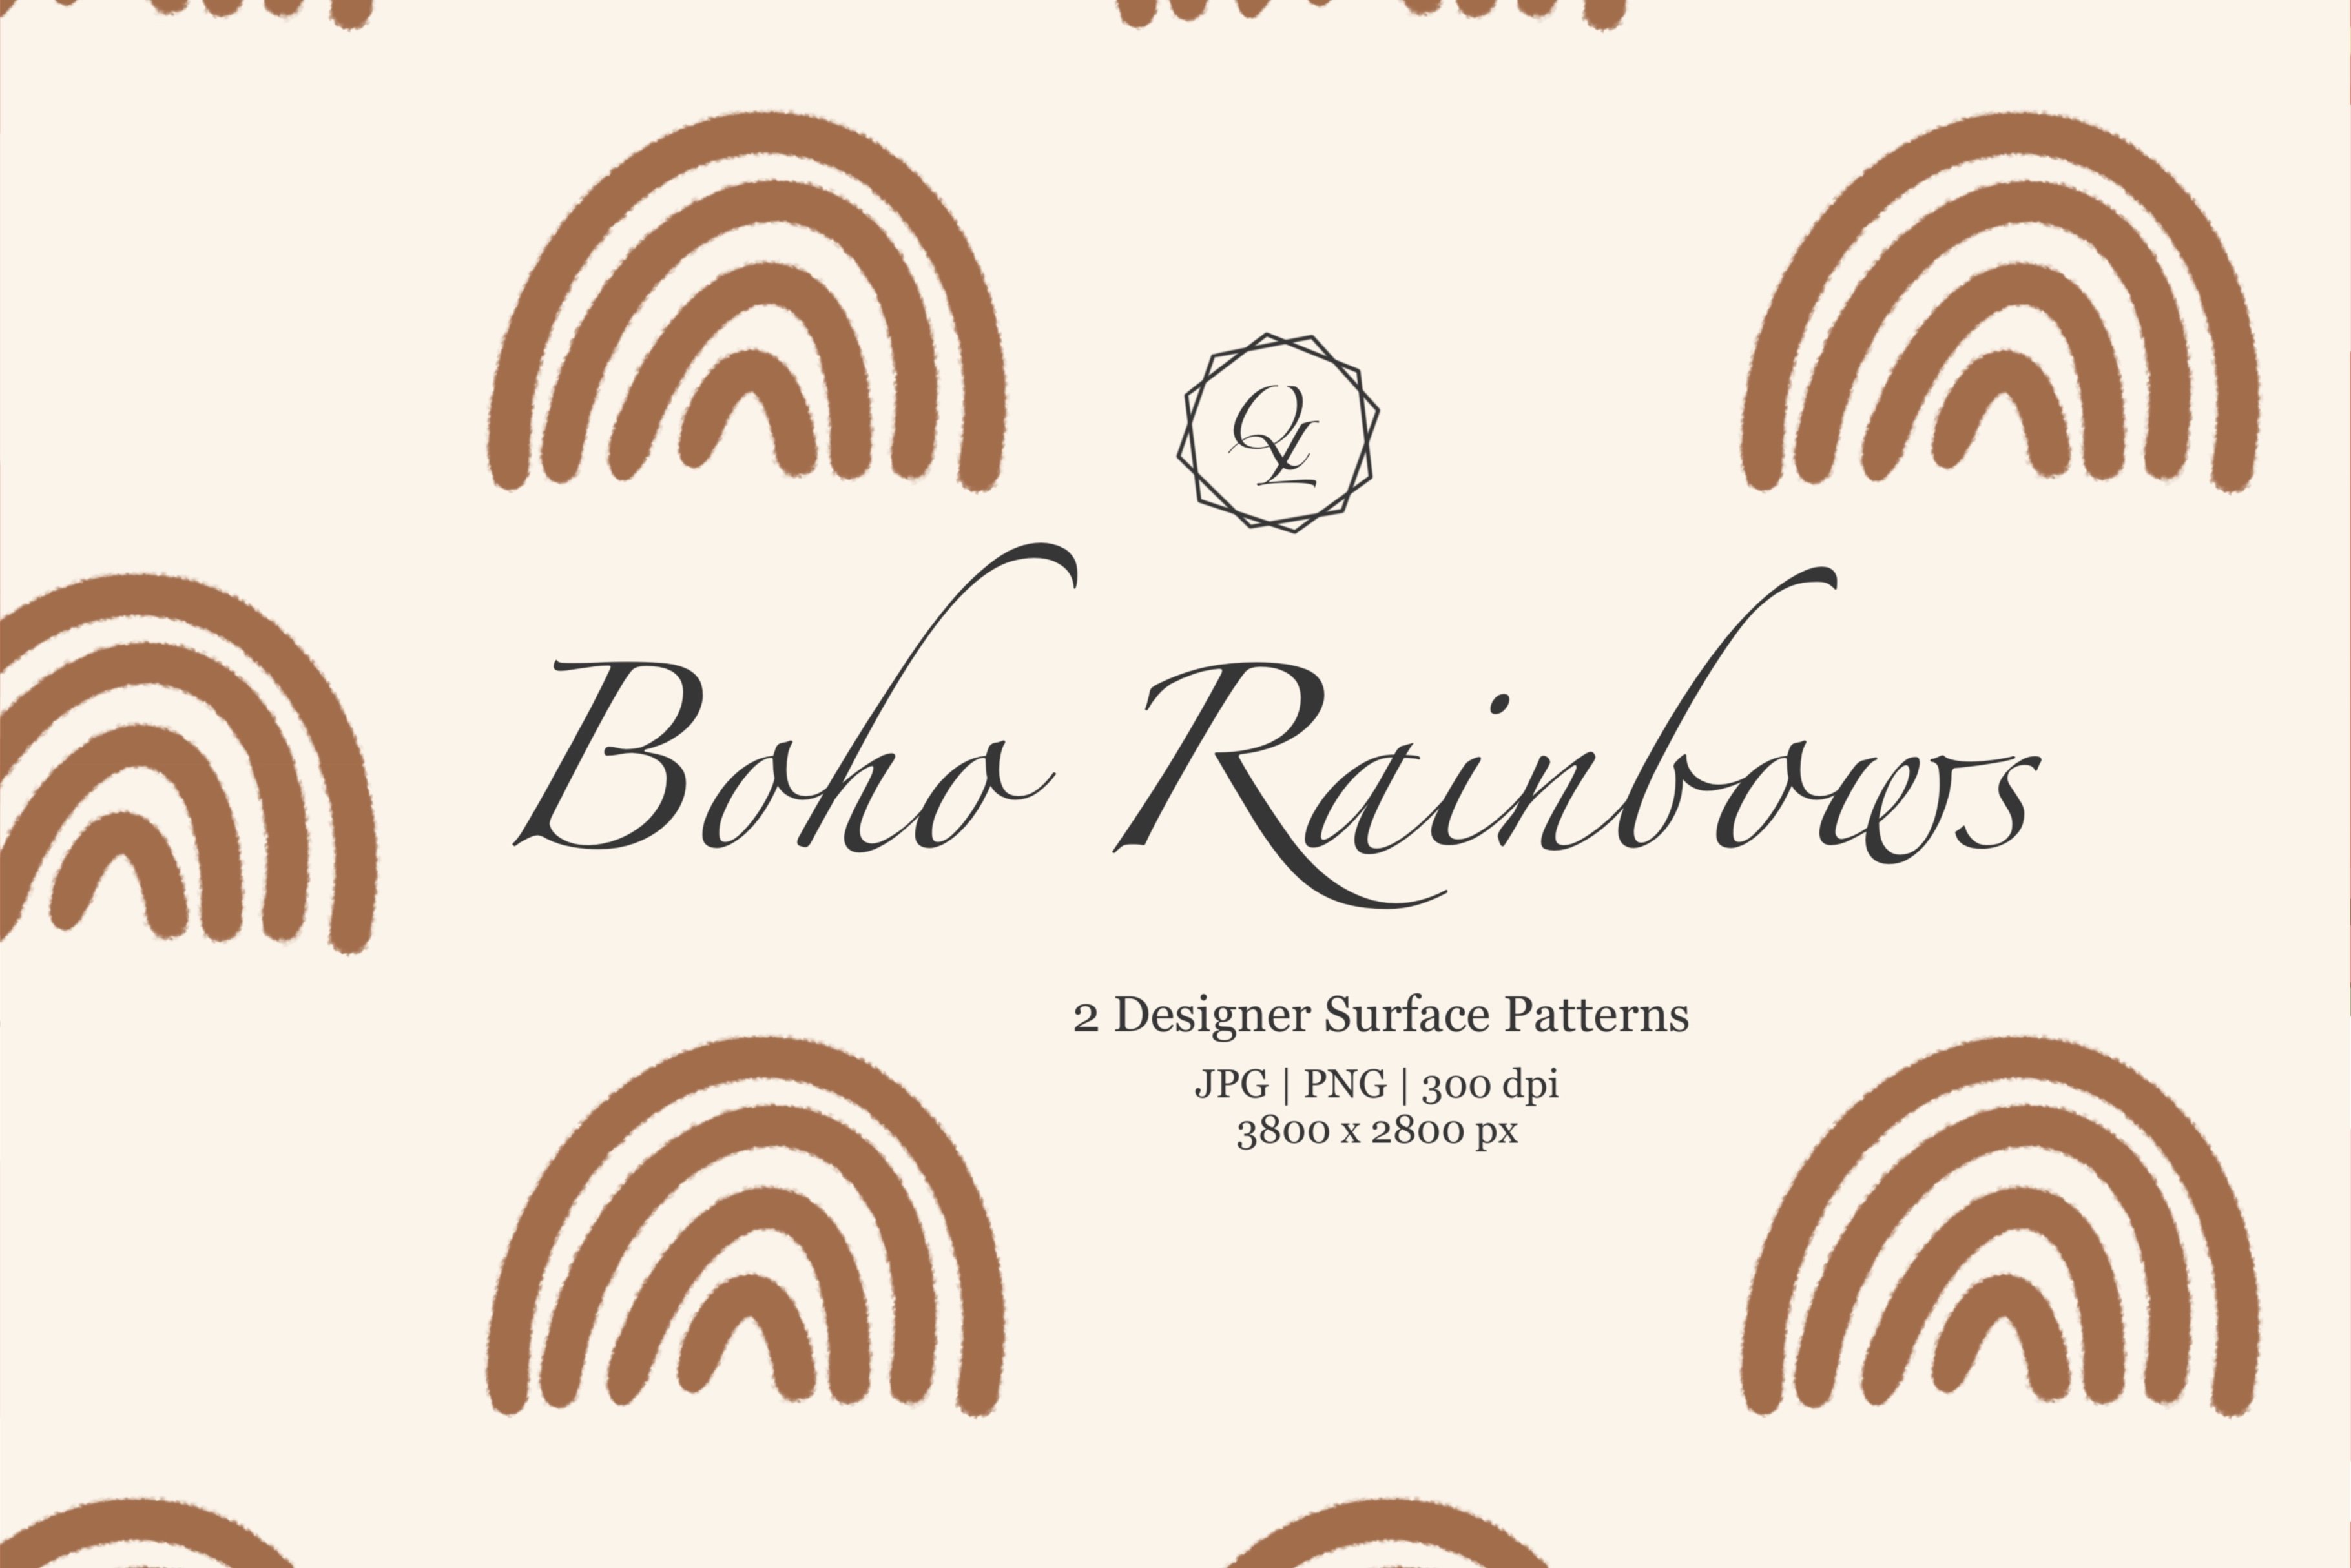 Burnt Orange Boho Rainbows Patterns cover image.